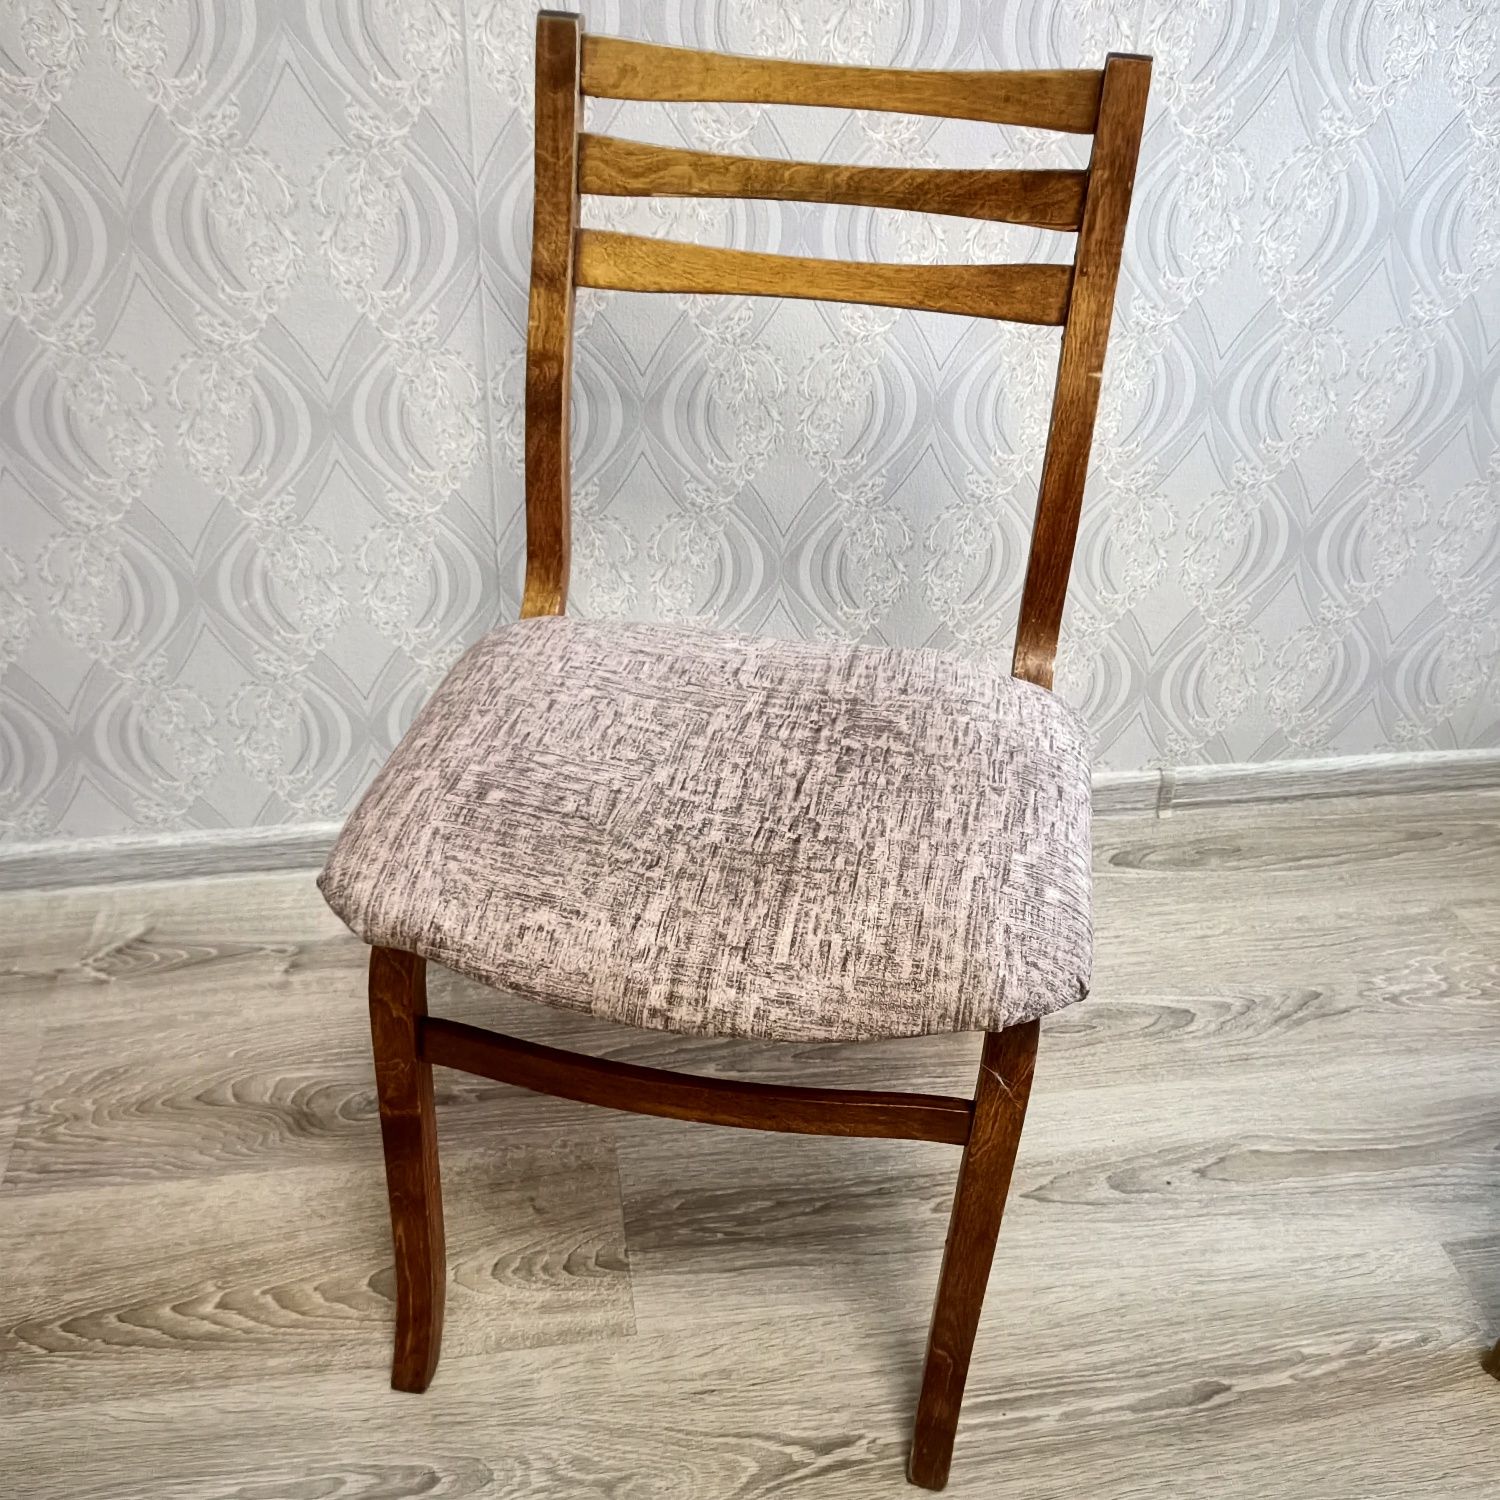 Продам деревянные стулья